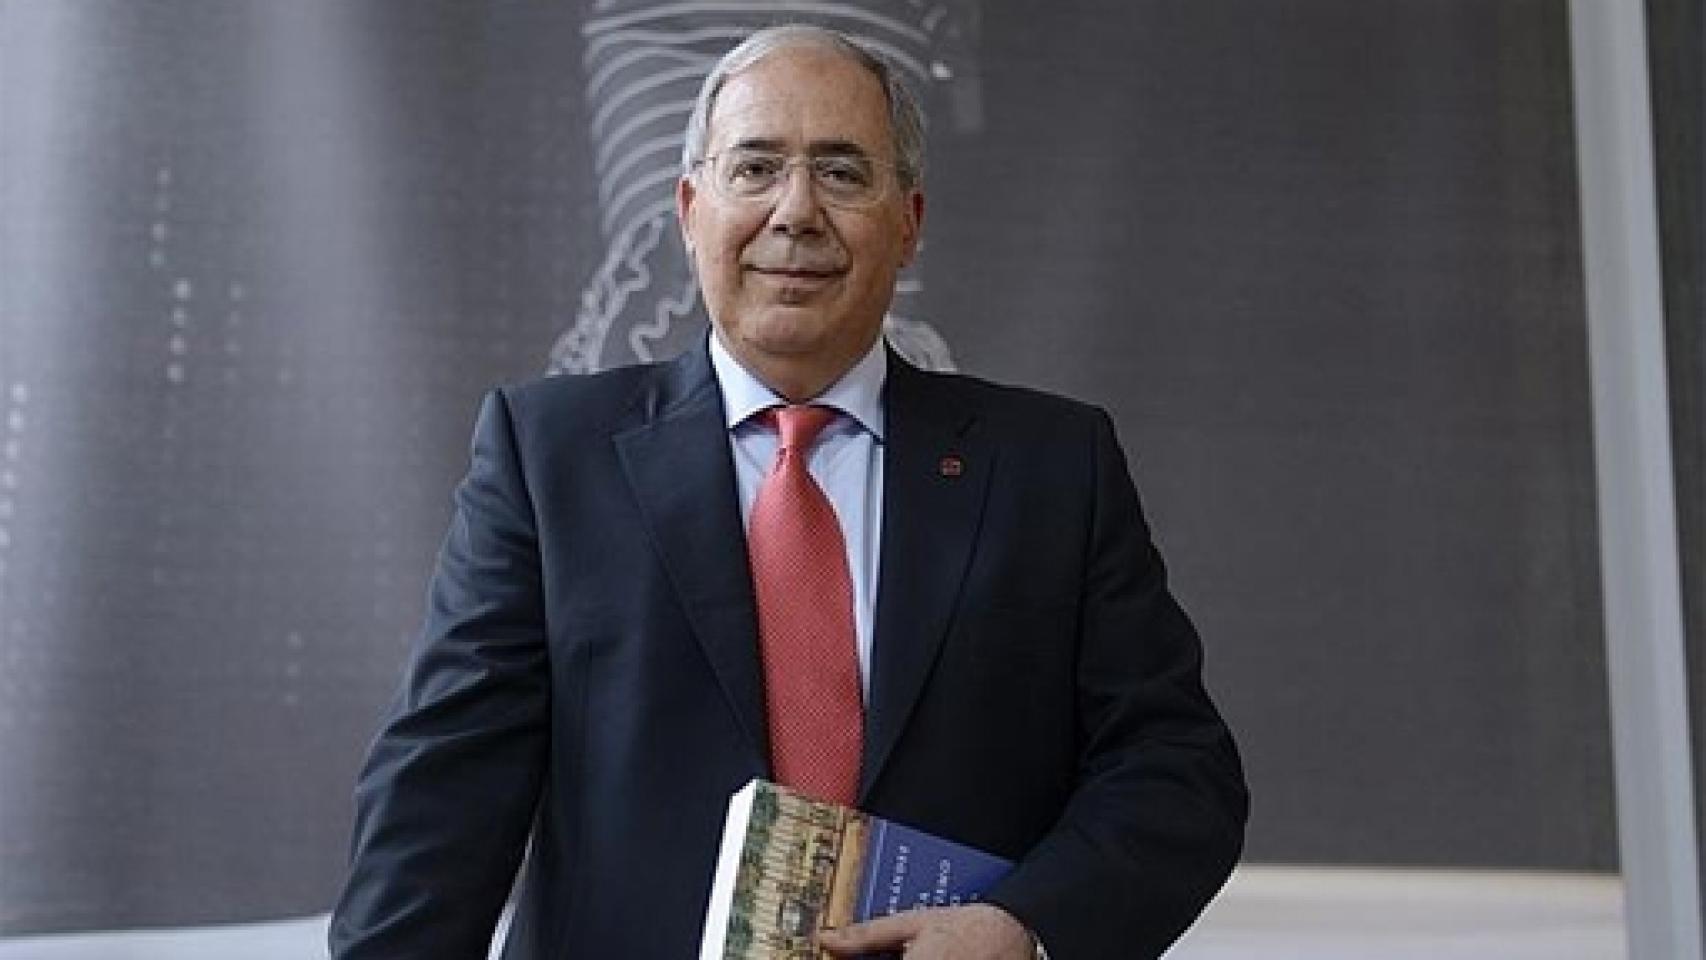 Image: Roberto Fernández Díaz, Premio Nacional de Historia de España 2015